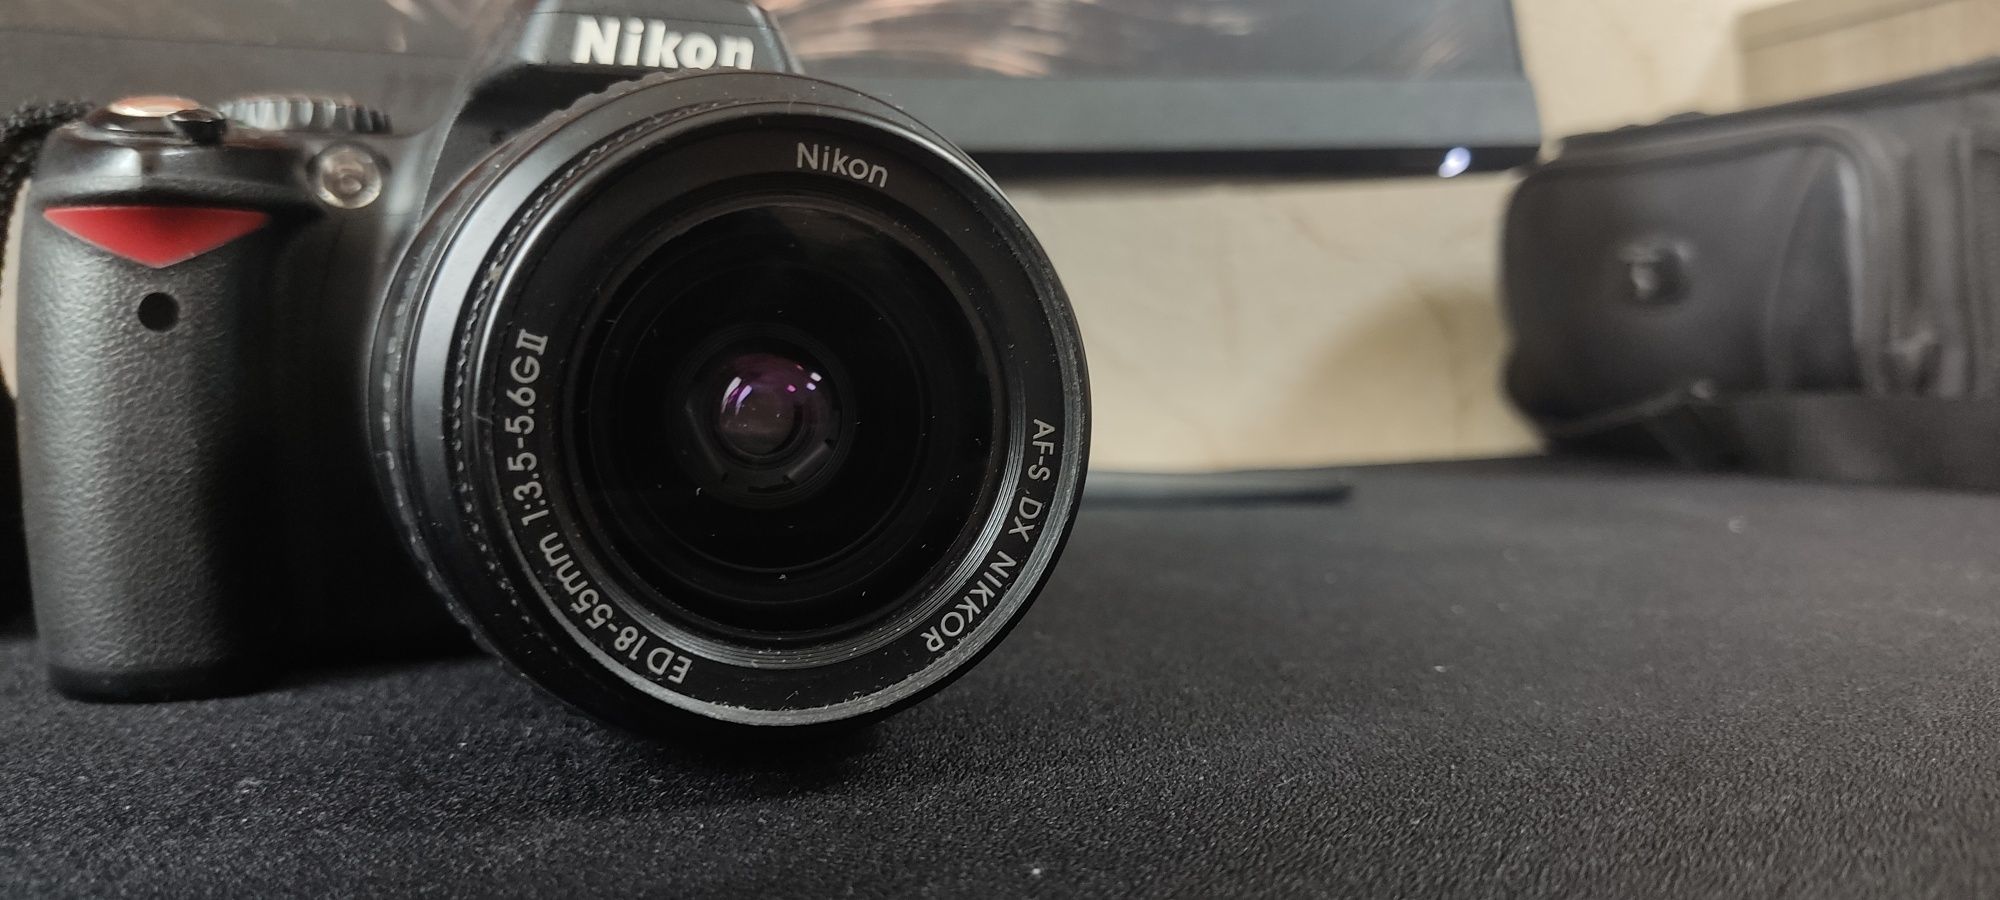 Фотоаппарат Nikon D40 в хорошем состоянии